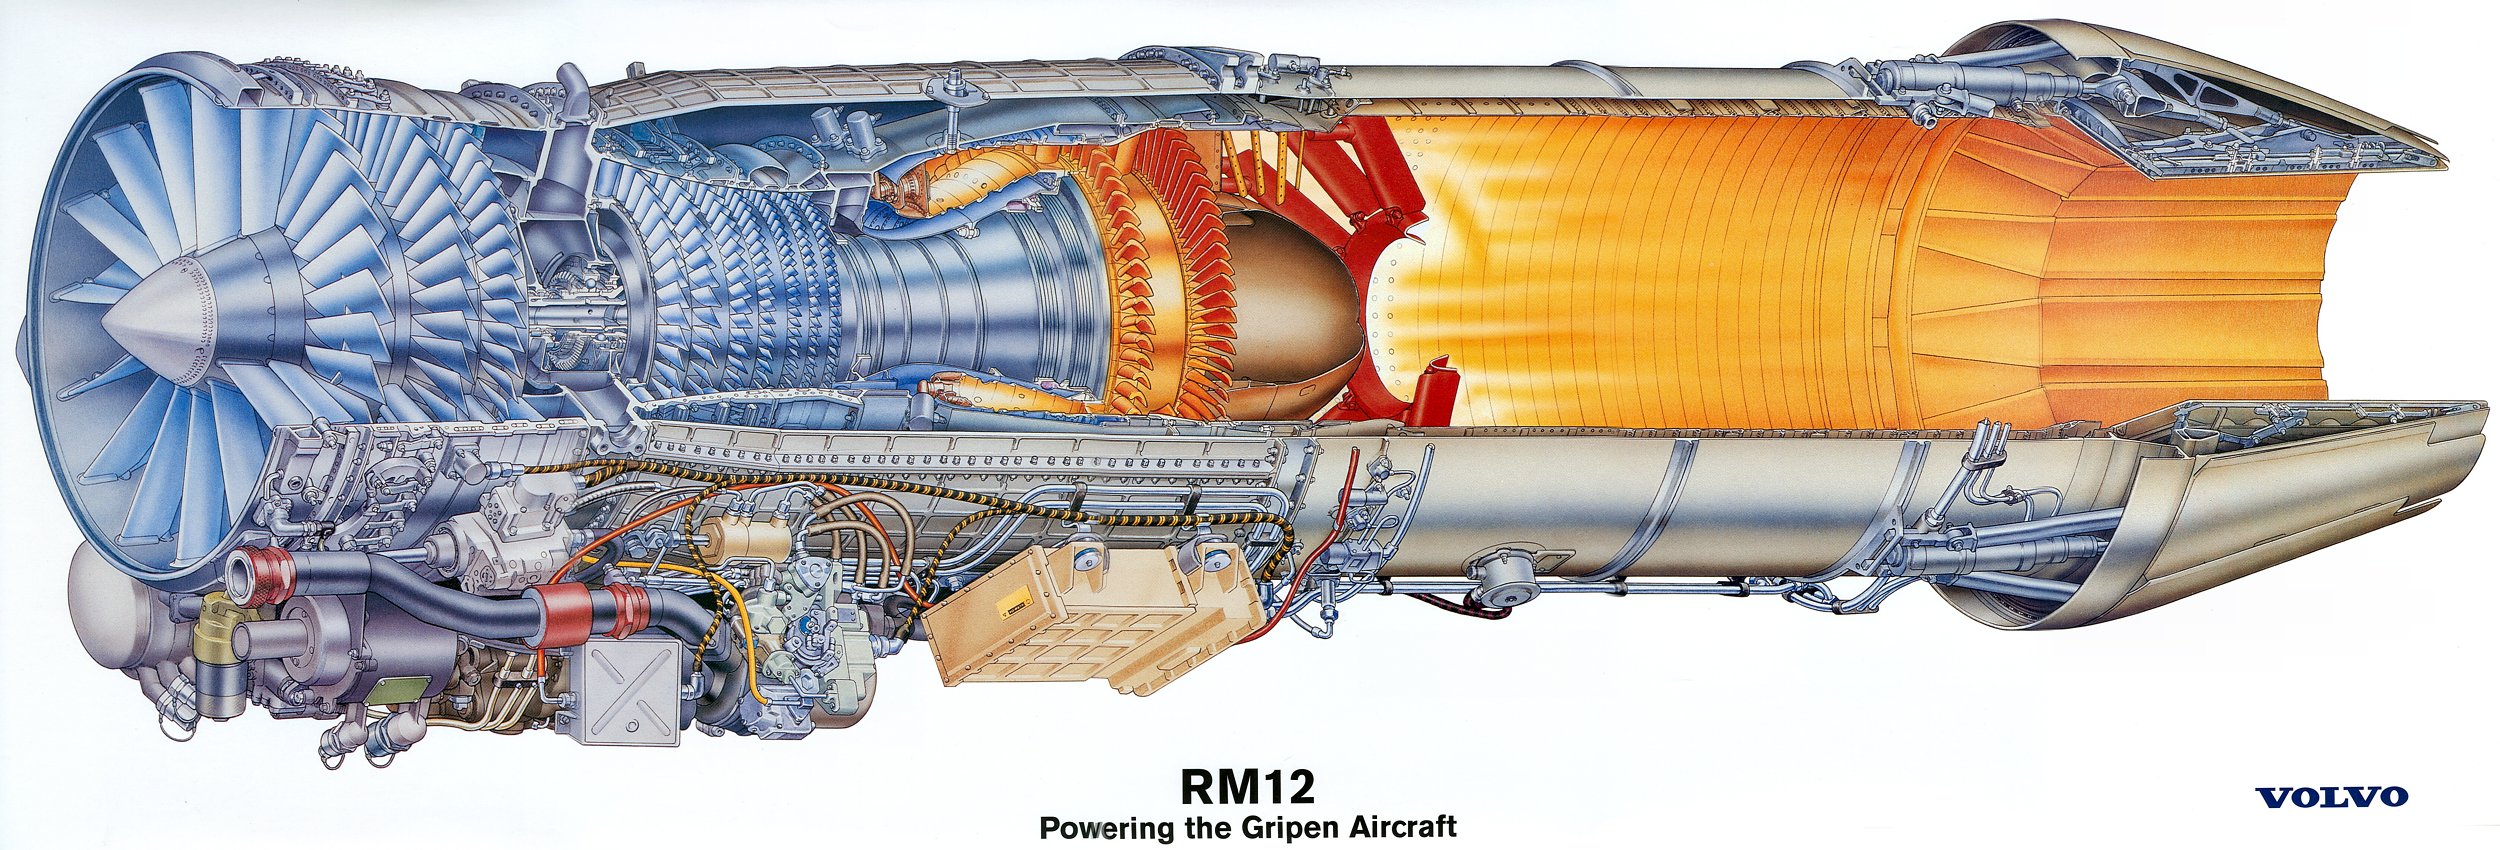 航空燃气涡轮发动机分类和使用特点